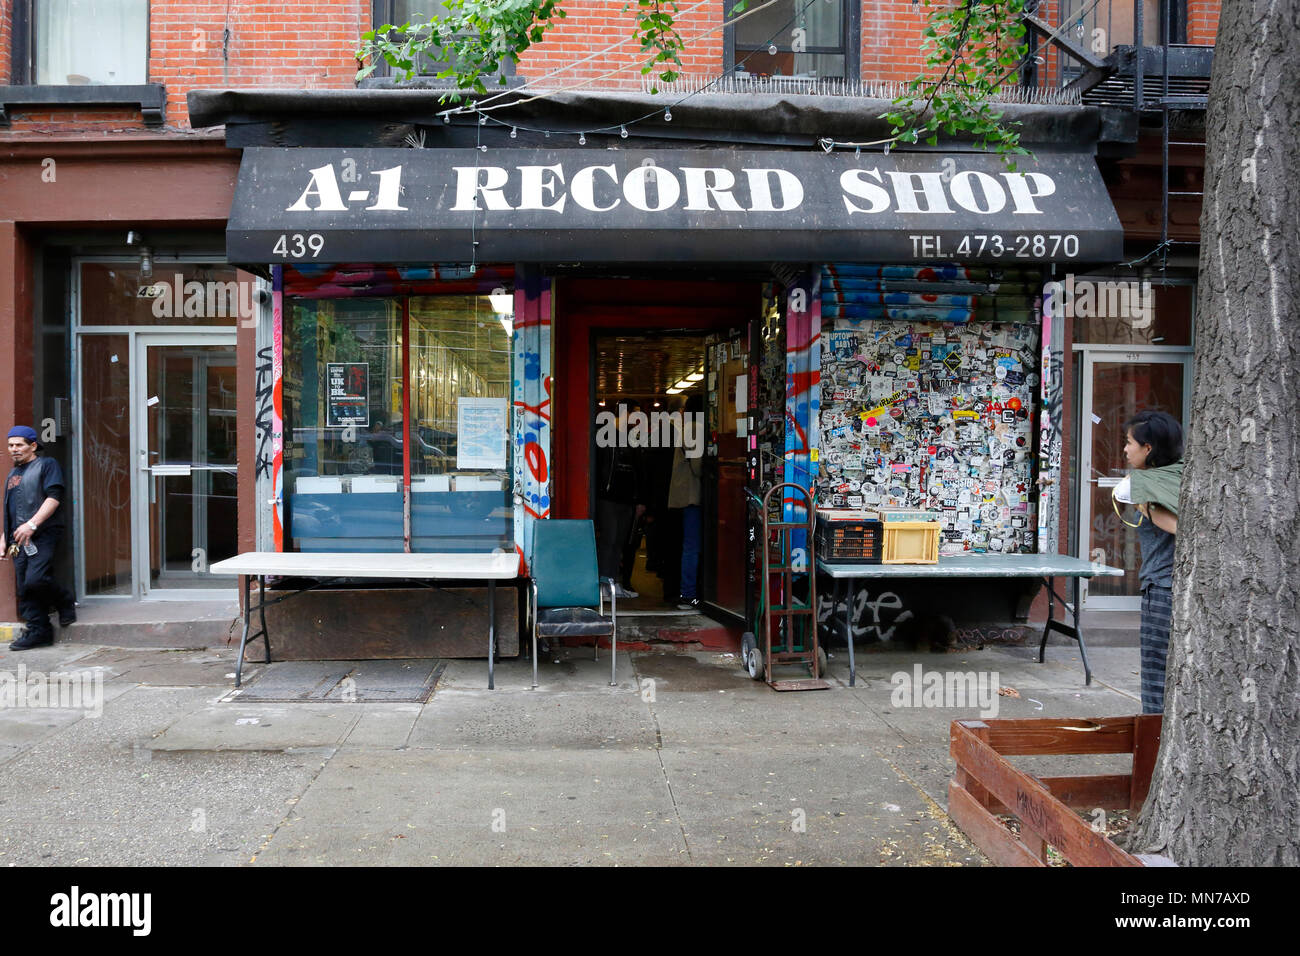 A1 Record Shop, 439 E 6th St, New York, NY. aussen Storefront eines Record Shop im East Village Viertel von Manhattan. Stockfoto